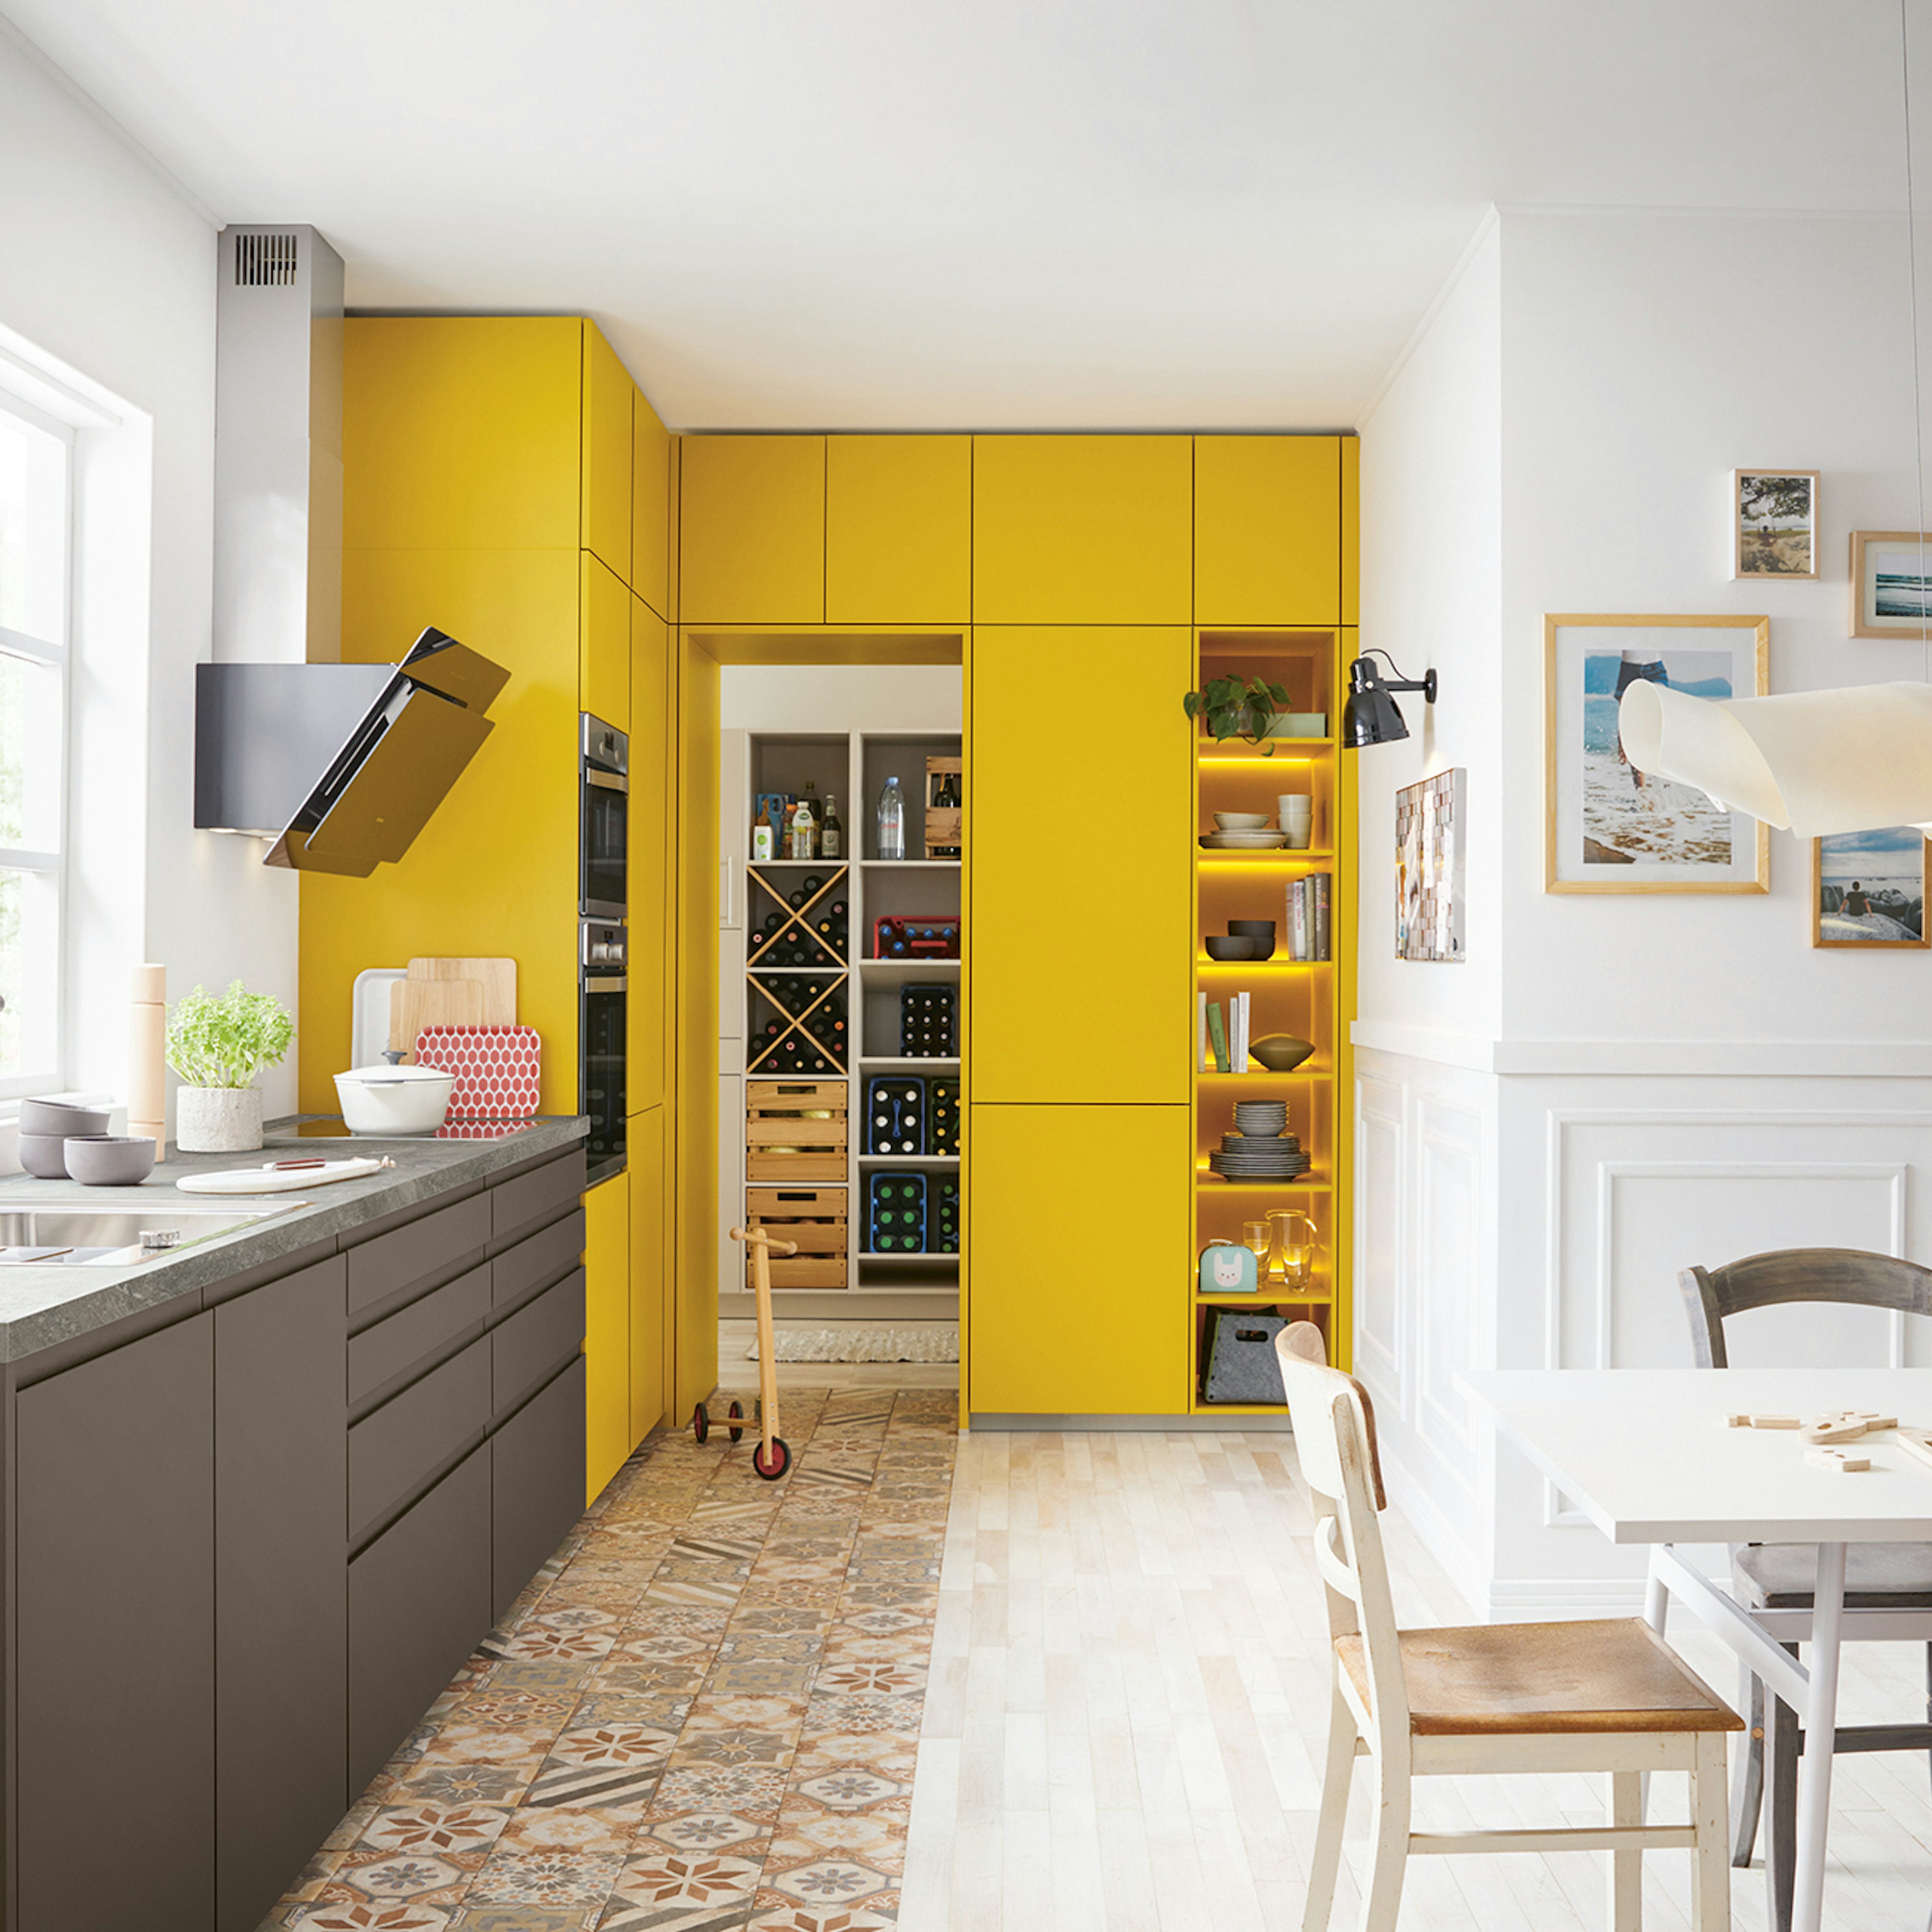 Moderne strakke keuken in de kleuren havannabruin en currygeel.